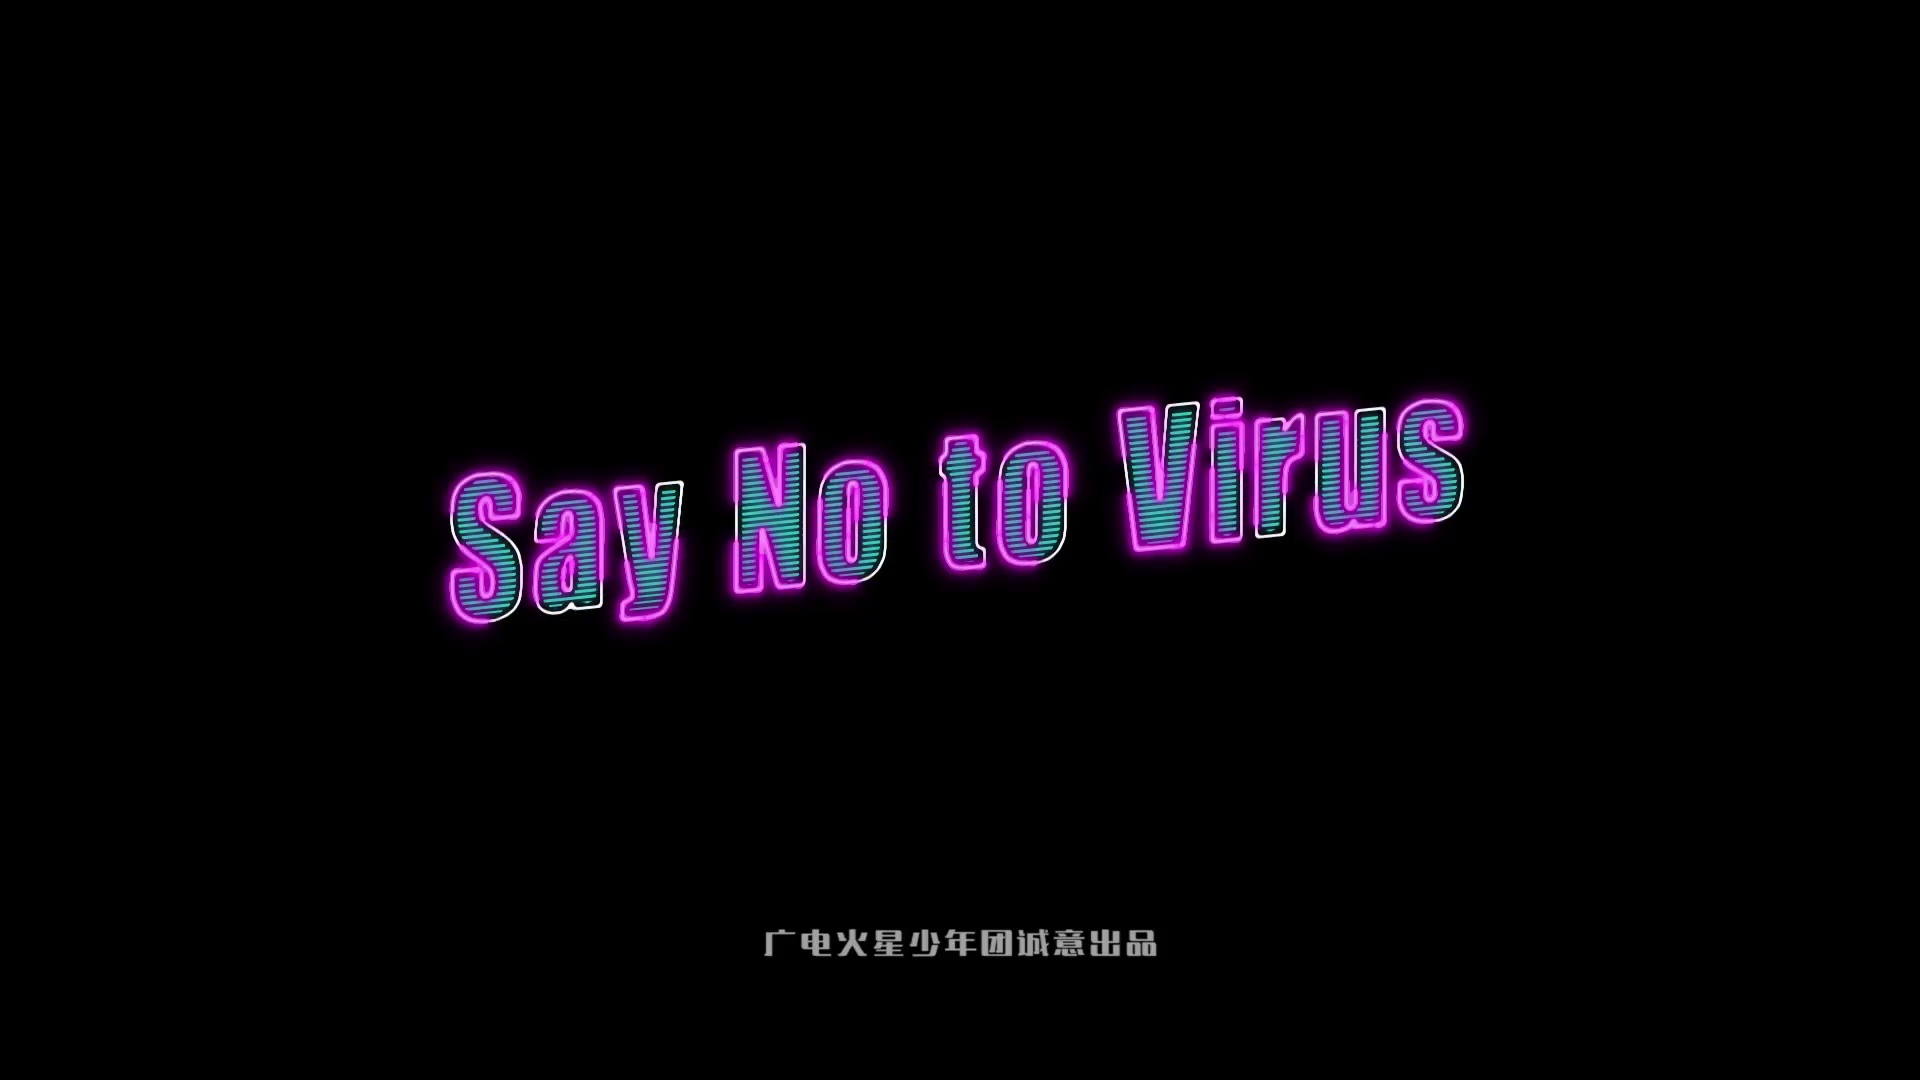 Say no to virus